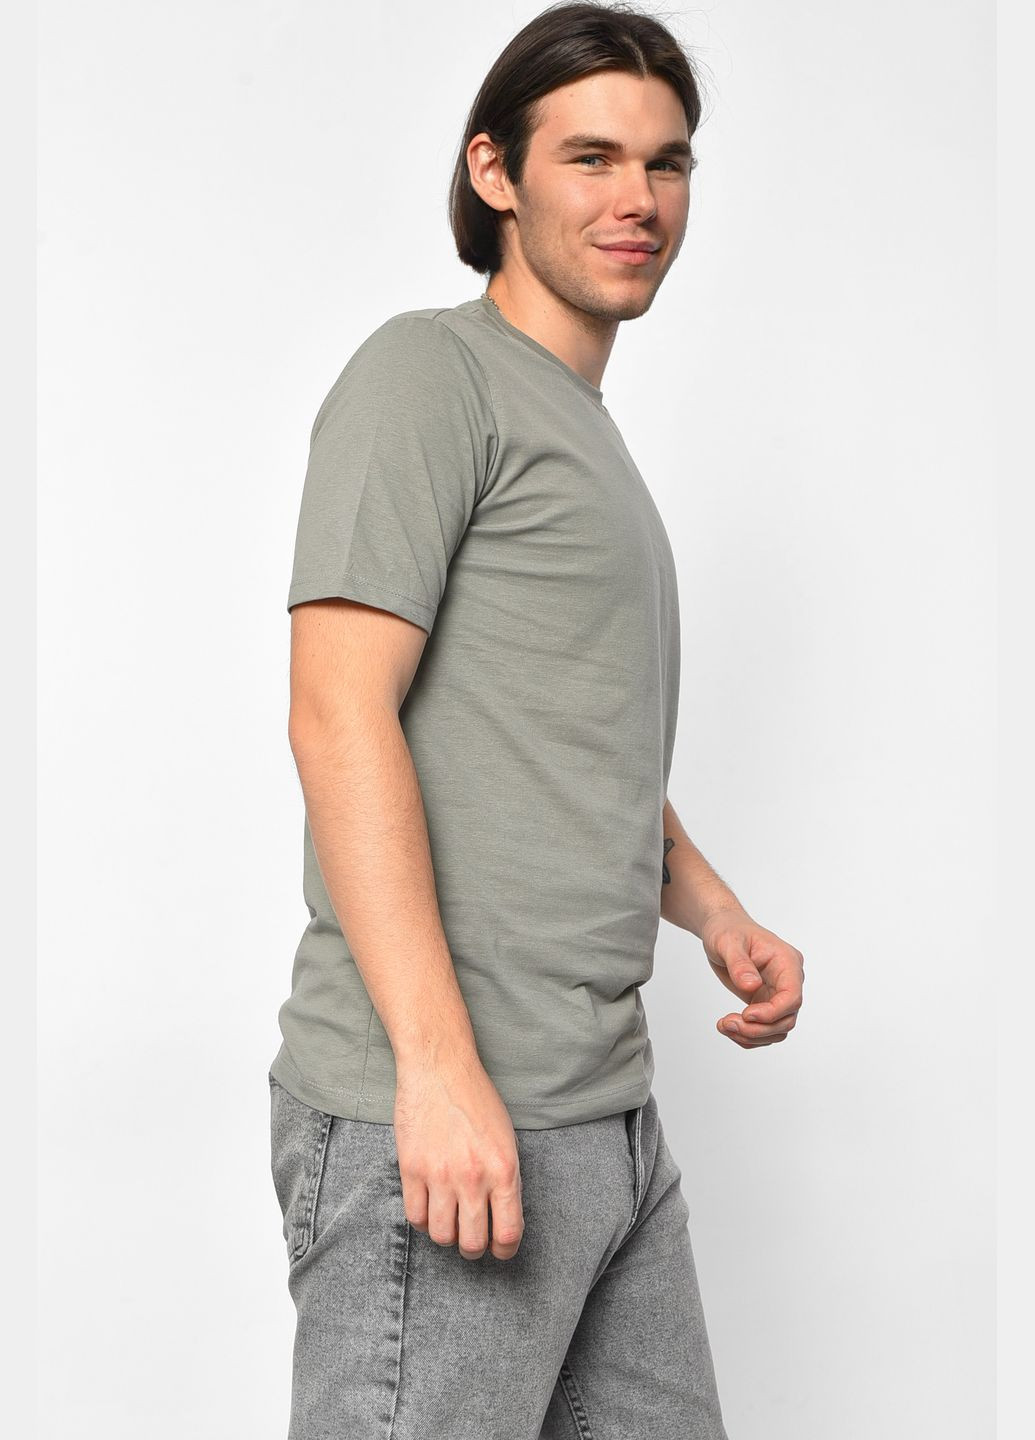 Сіра футболка чоловіча однотонна сірого кольору Let's Shop